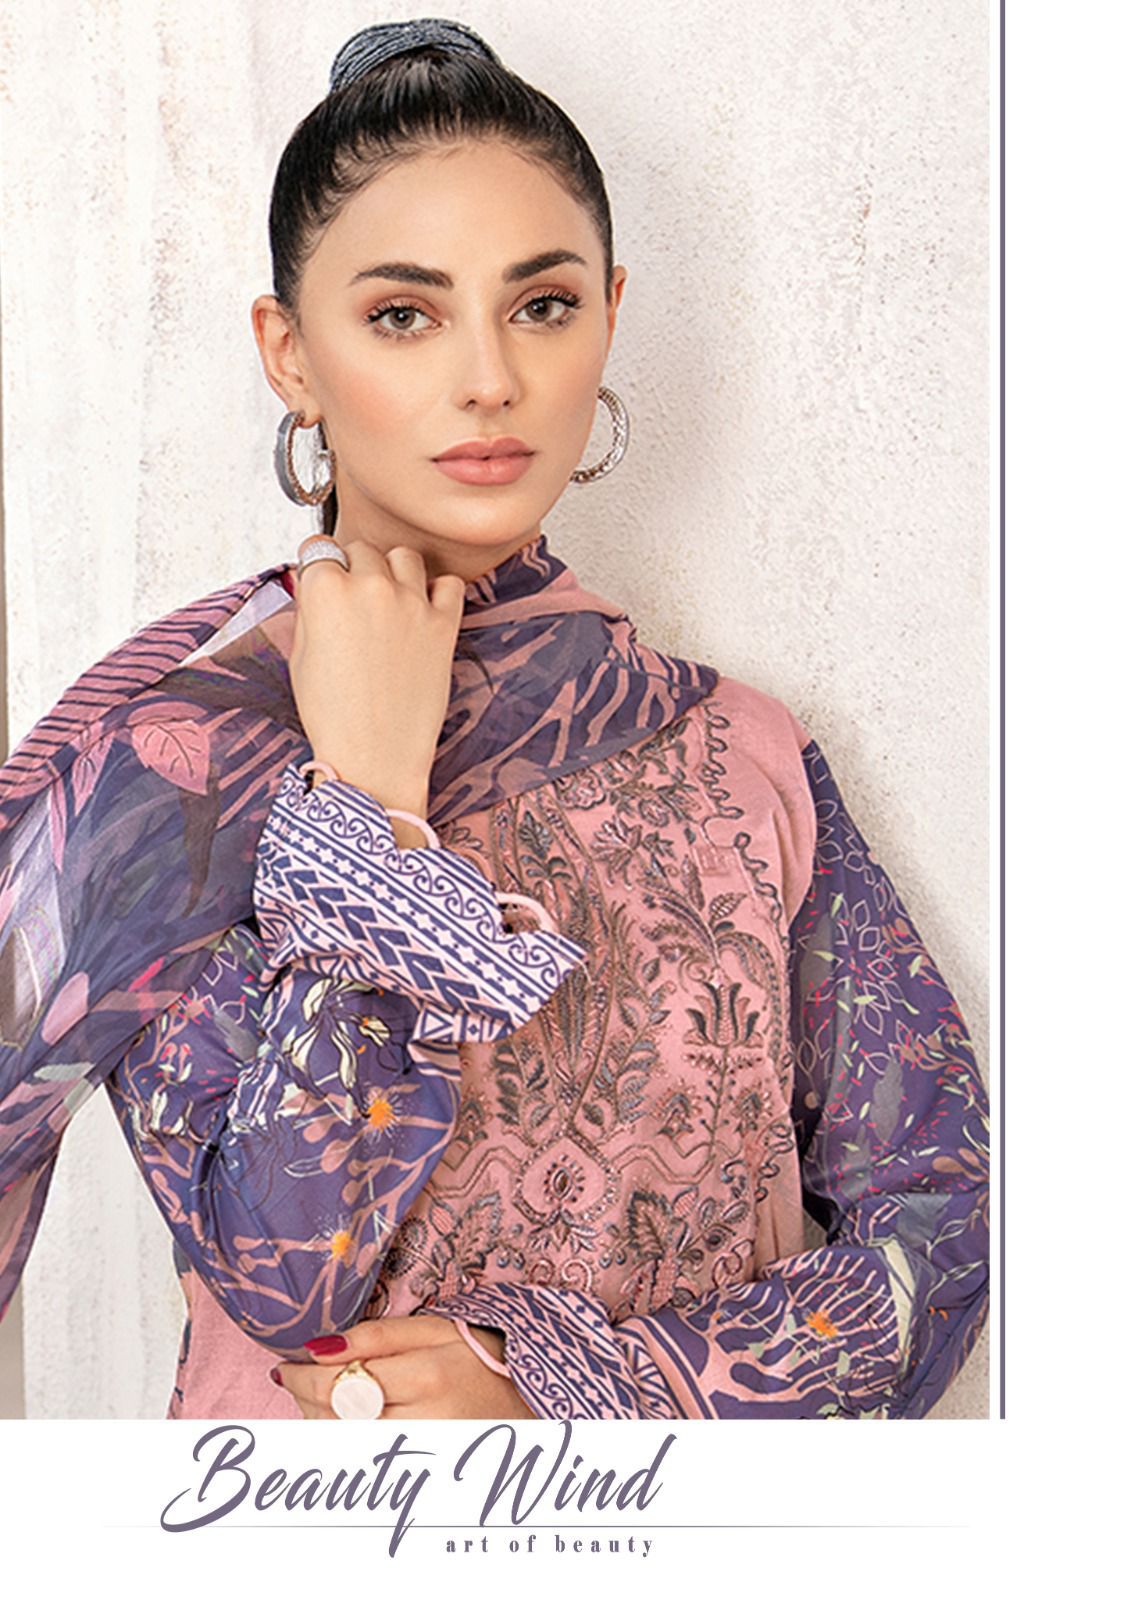 Nafisa Cotton Safina Karachi Suits Vol 2 Low Range Suits At Wholesale Rate - jilaniwholesalesuit